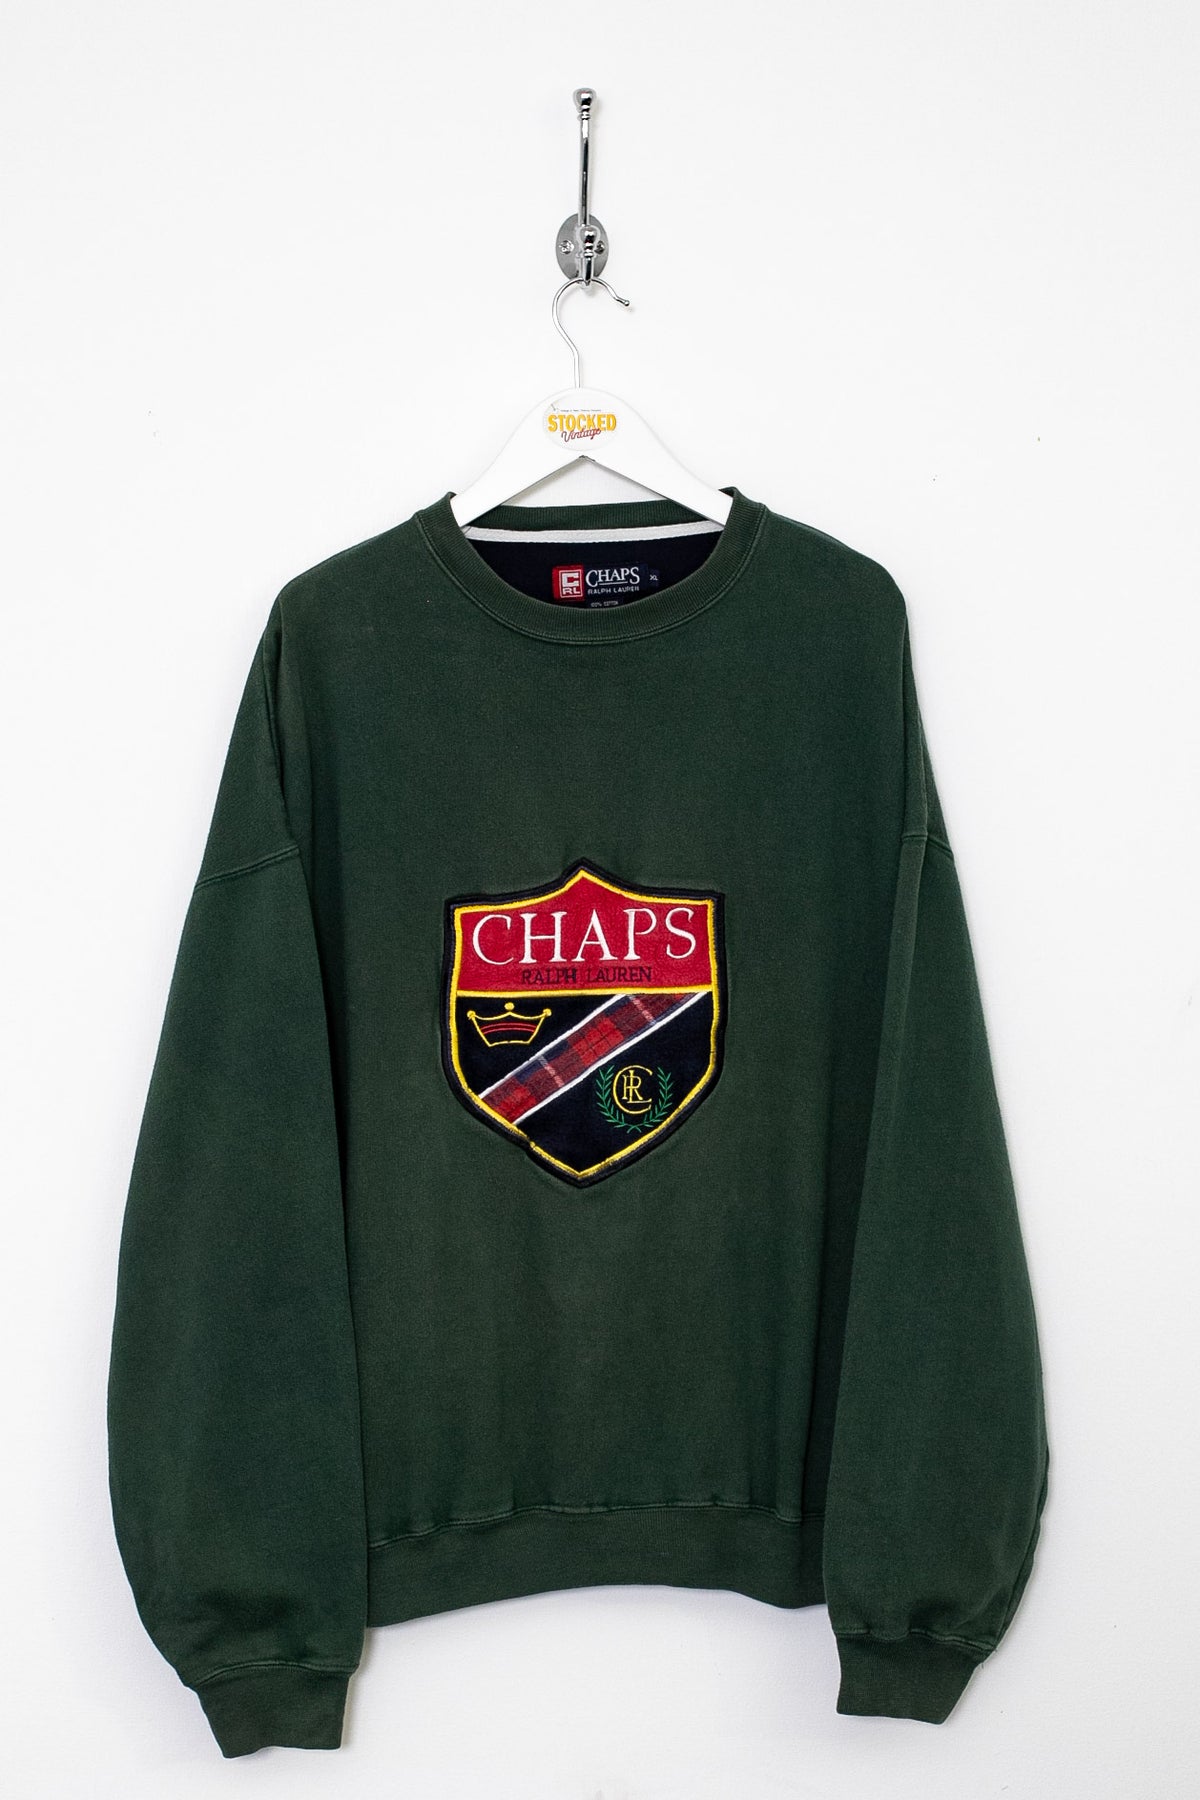 00s Ralph Lauren Chaps Sweatshirt (XL)